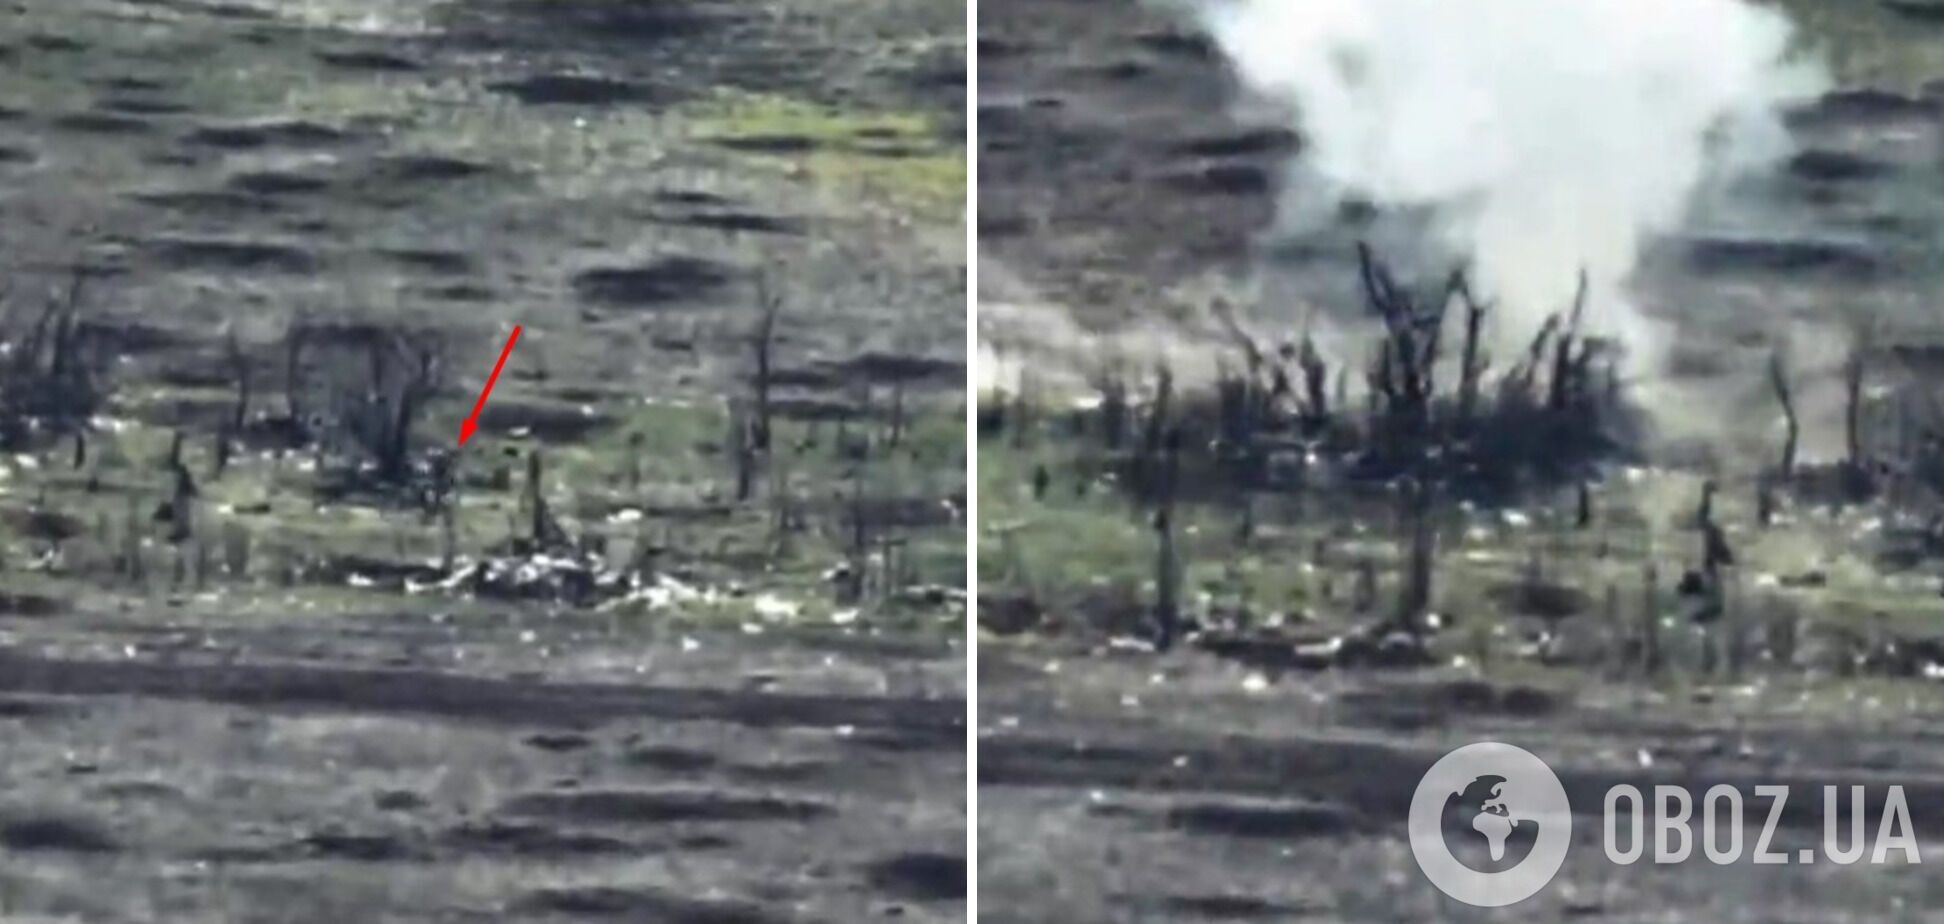 "Тікати від українського дрона – погана ідея": окупант намагався врятуватися втечею, але план провалився. Відео